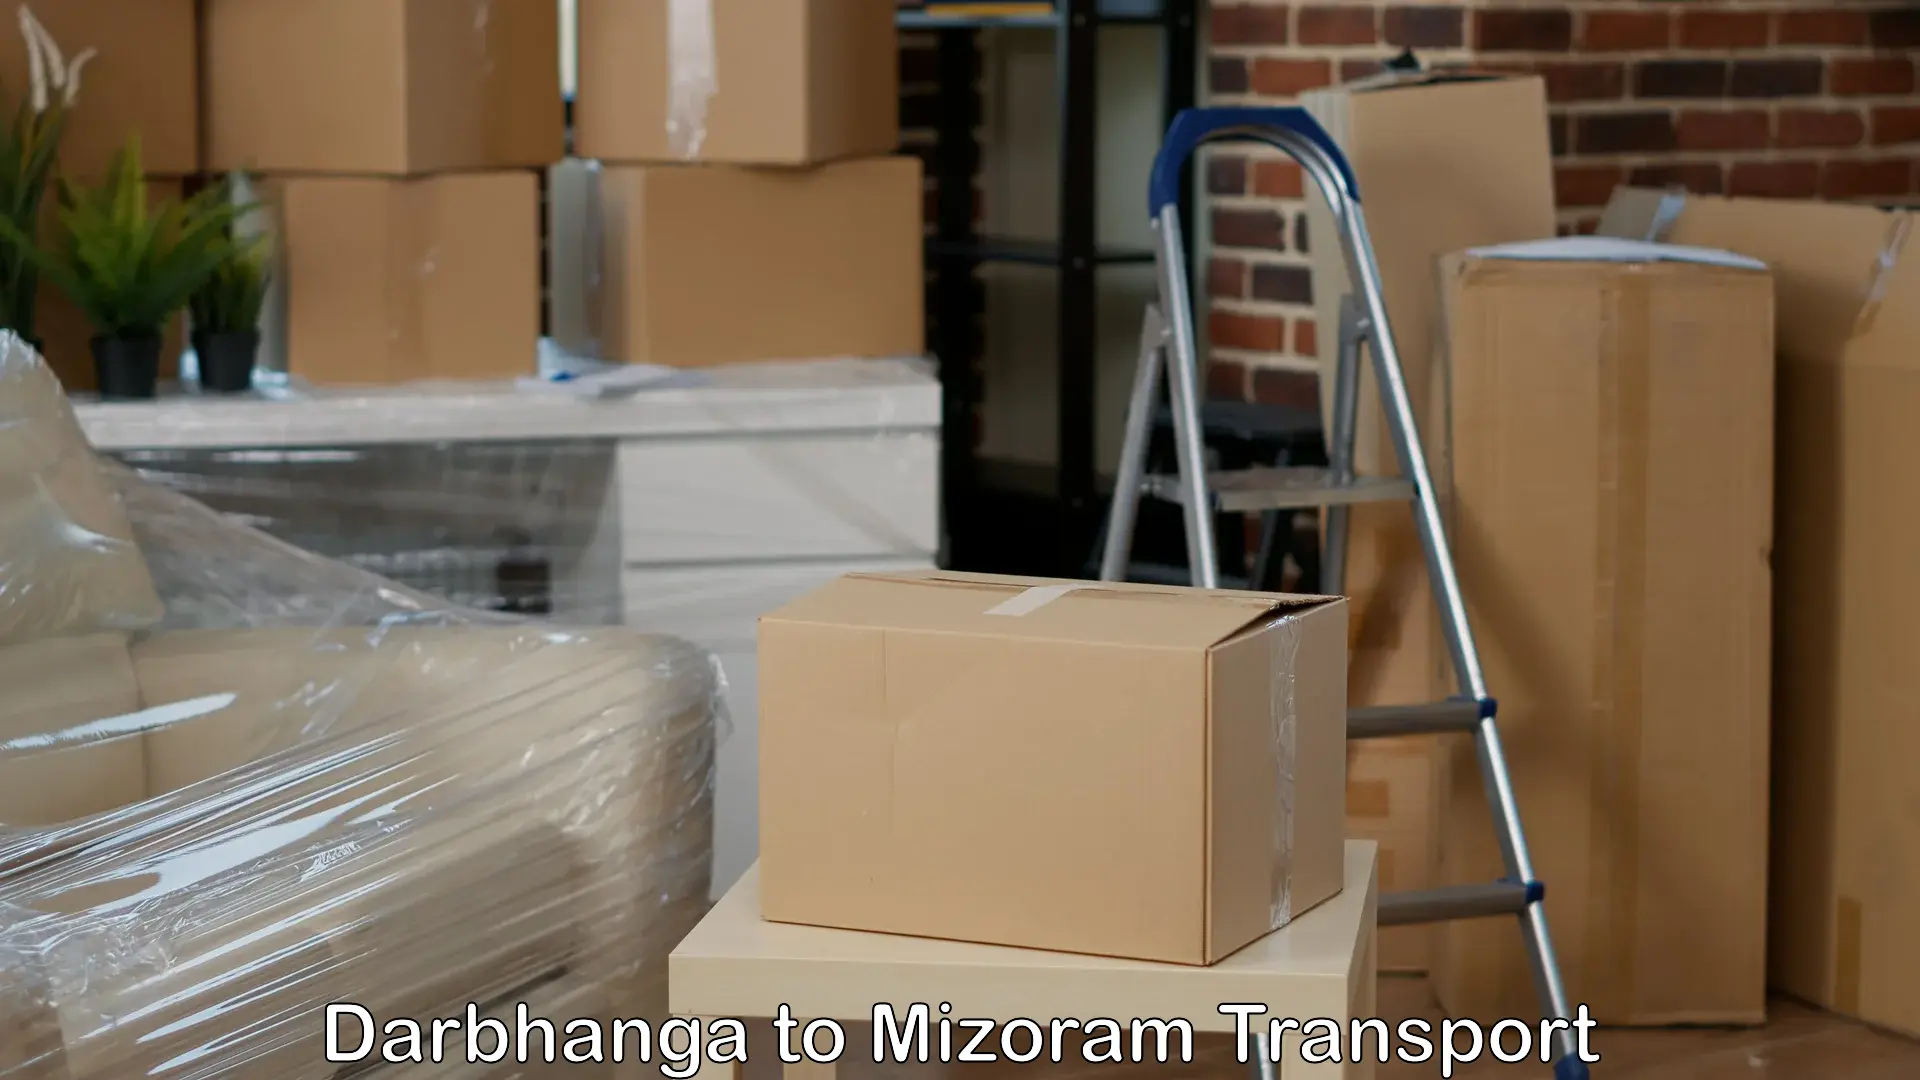 Bike shifting service in Darbhanga to Mizoram